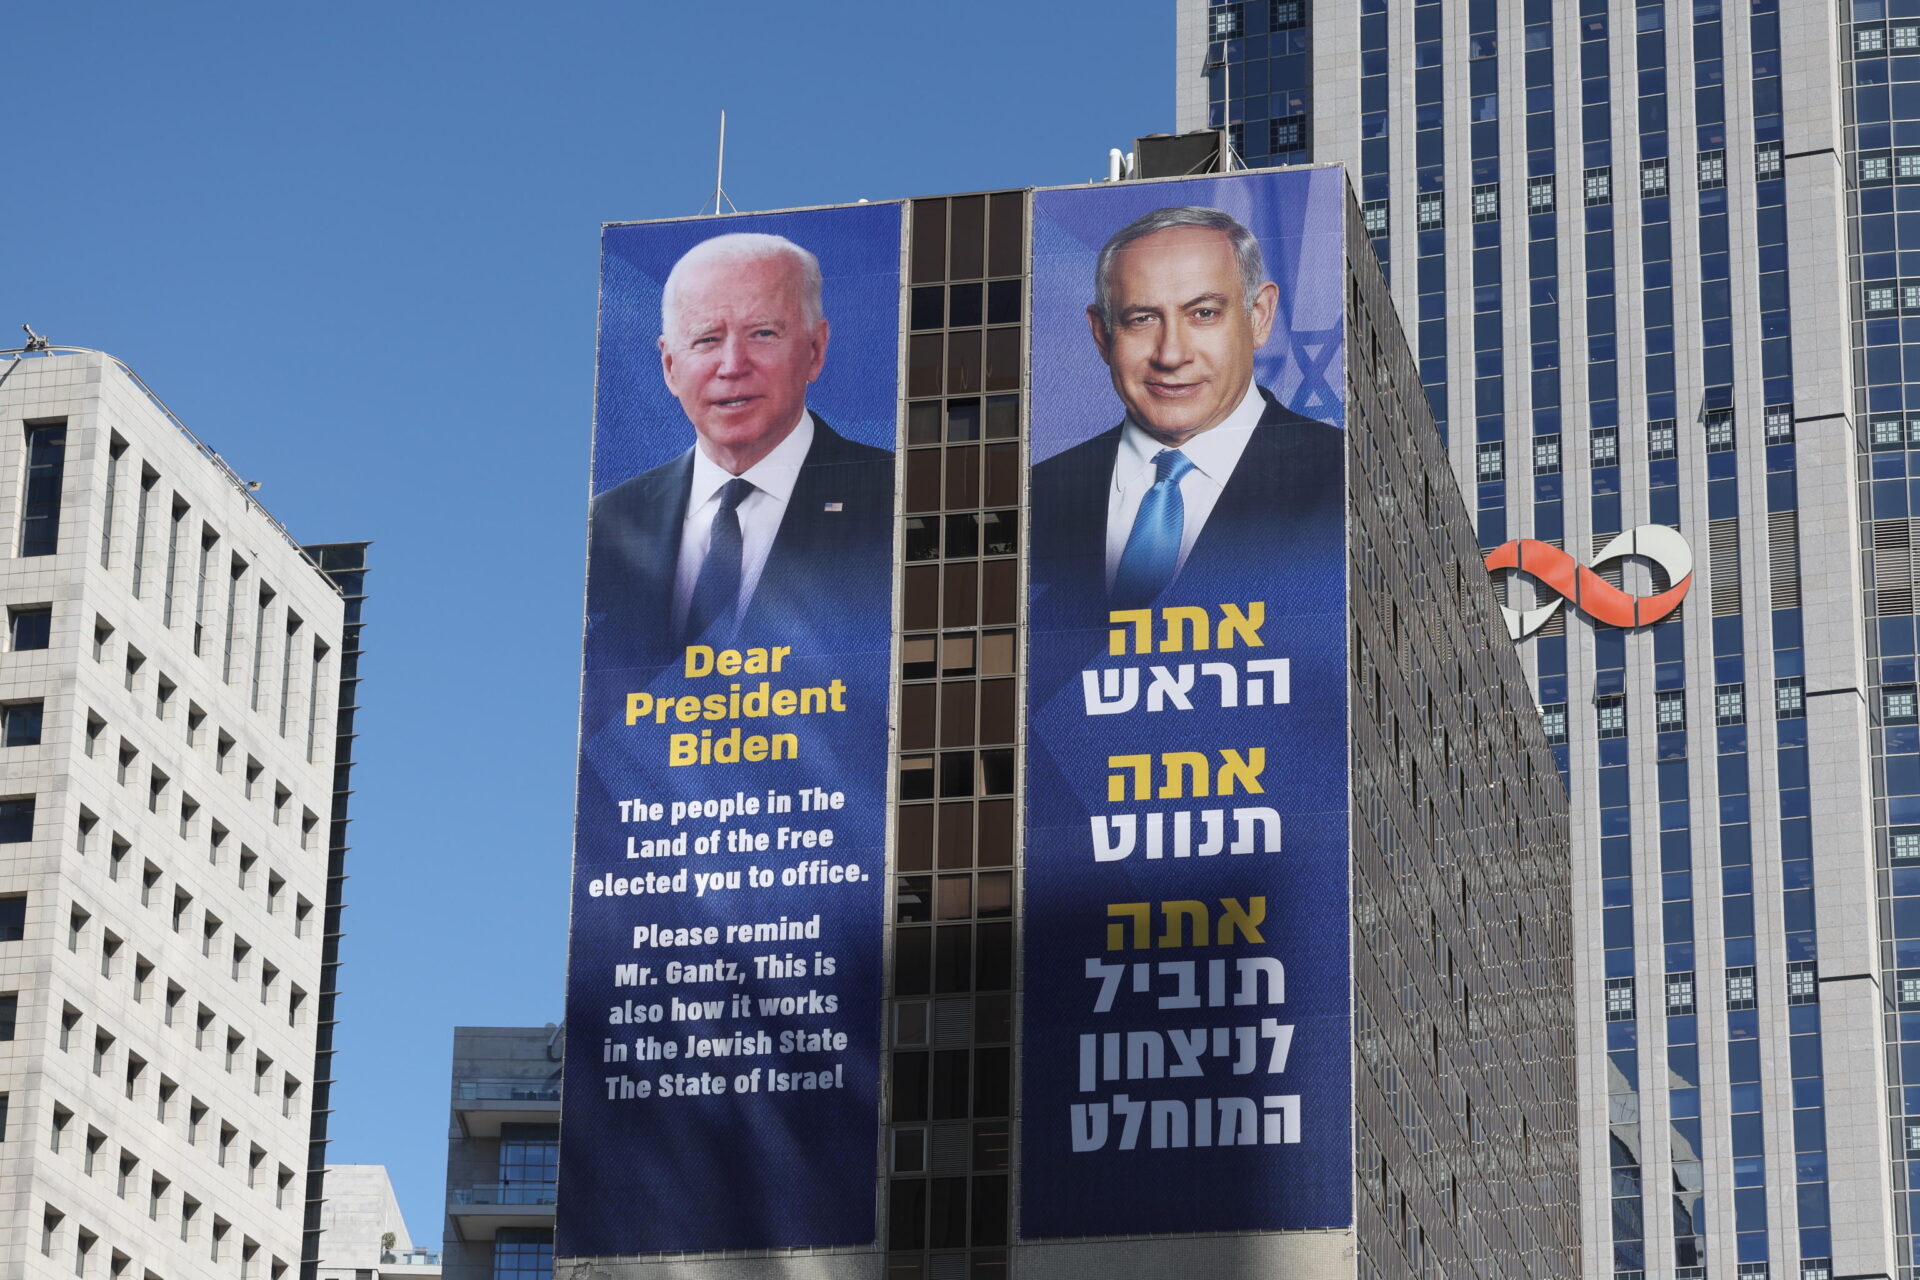 Rafah per l’Iran. Così Netanyahu ricatta Biden